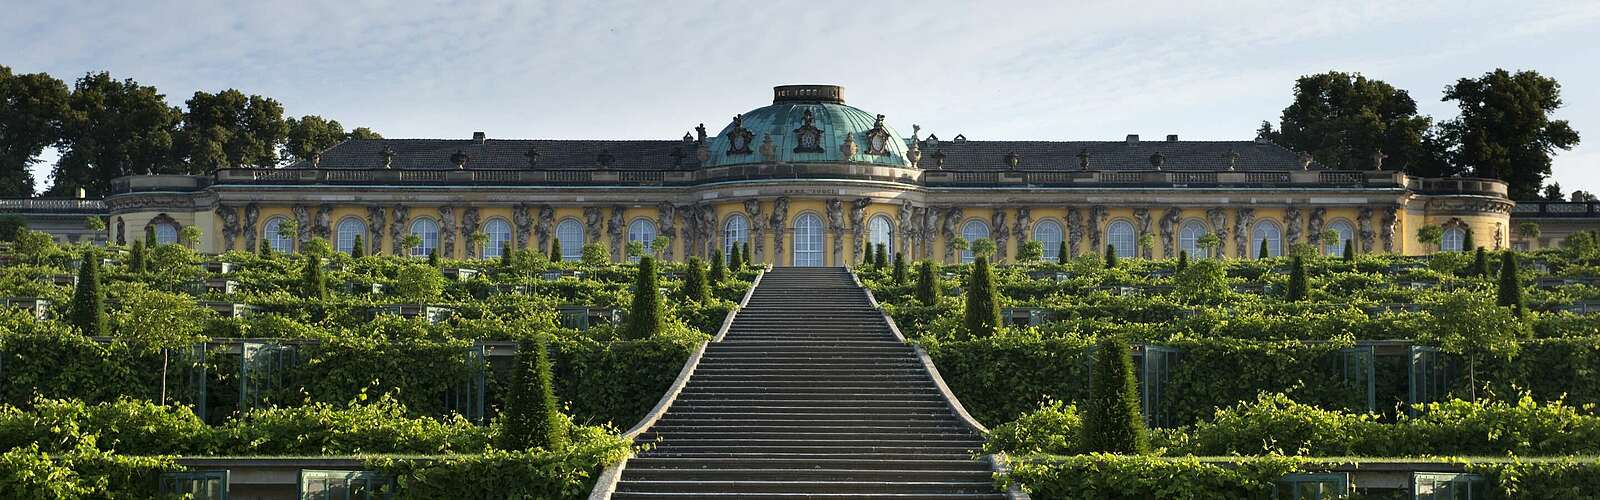 Schloss Sanssouci,
        
    

        Foto: TMB-Fotoarchiv/SPSG/Leo Seidel